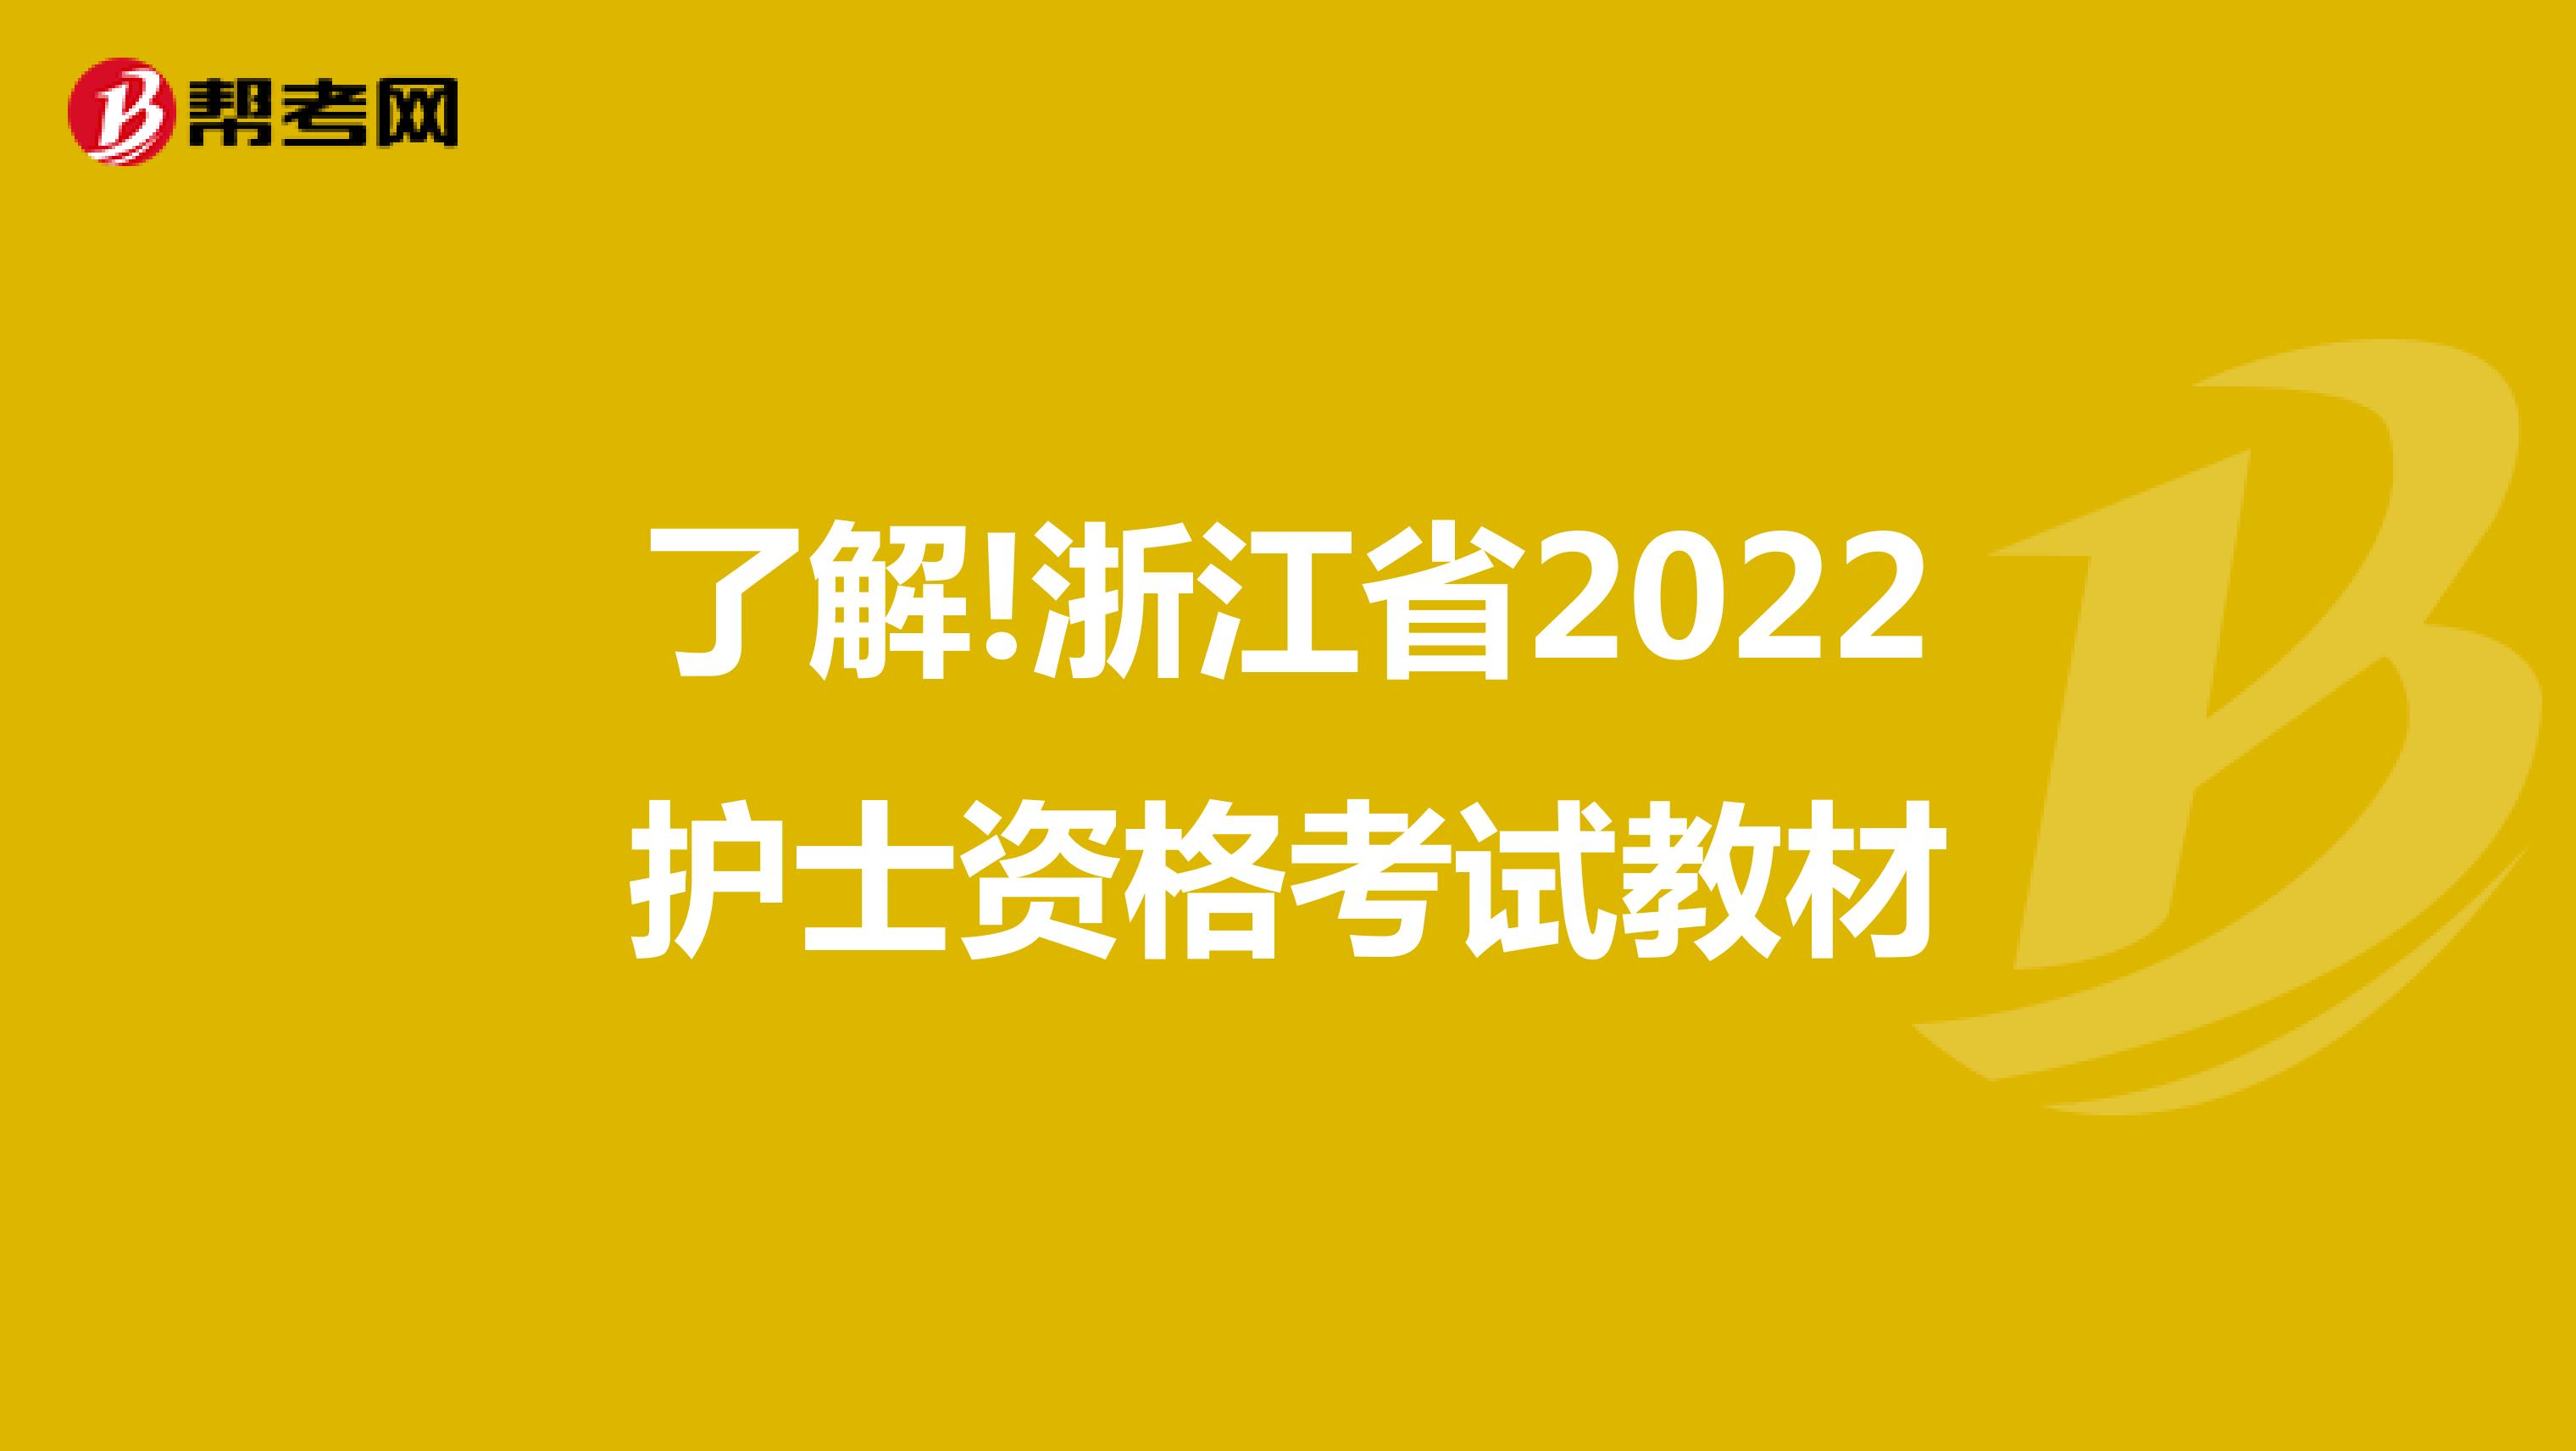 了解!浙江省2022护士资格考试教材